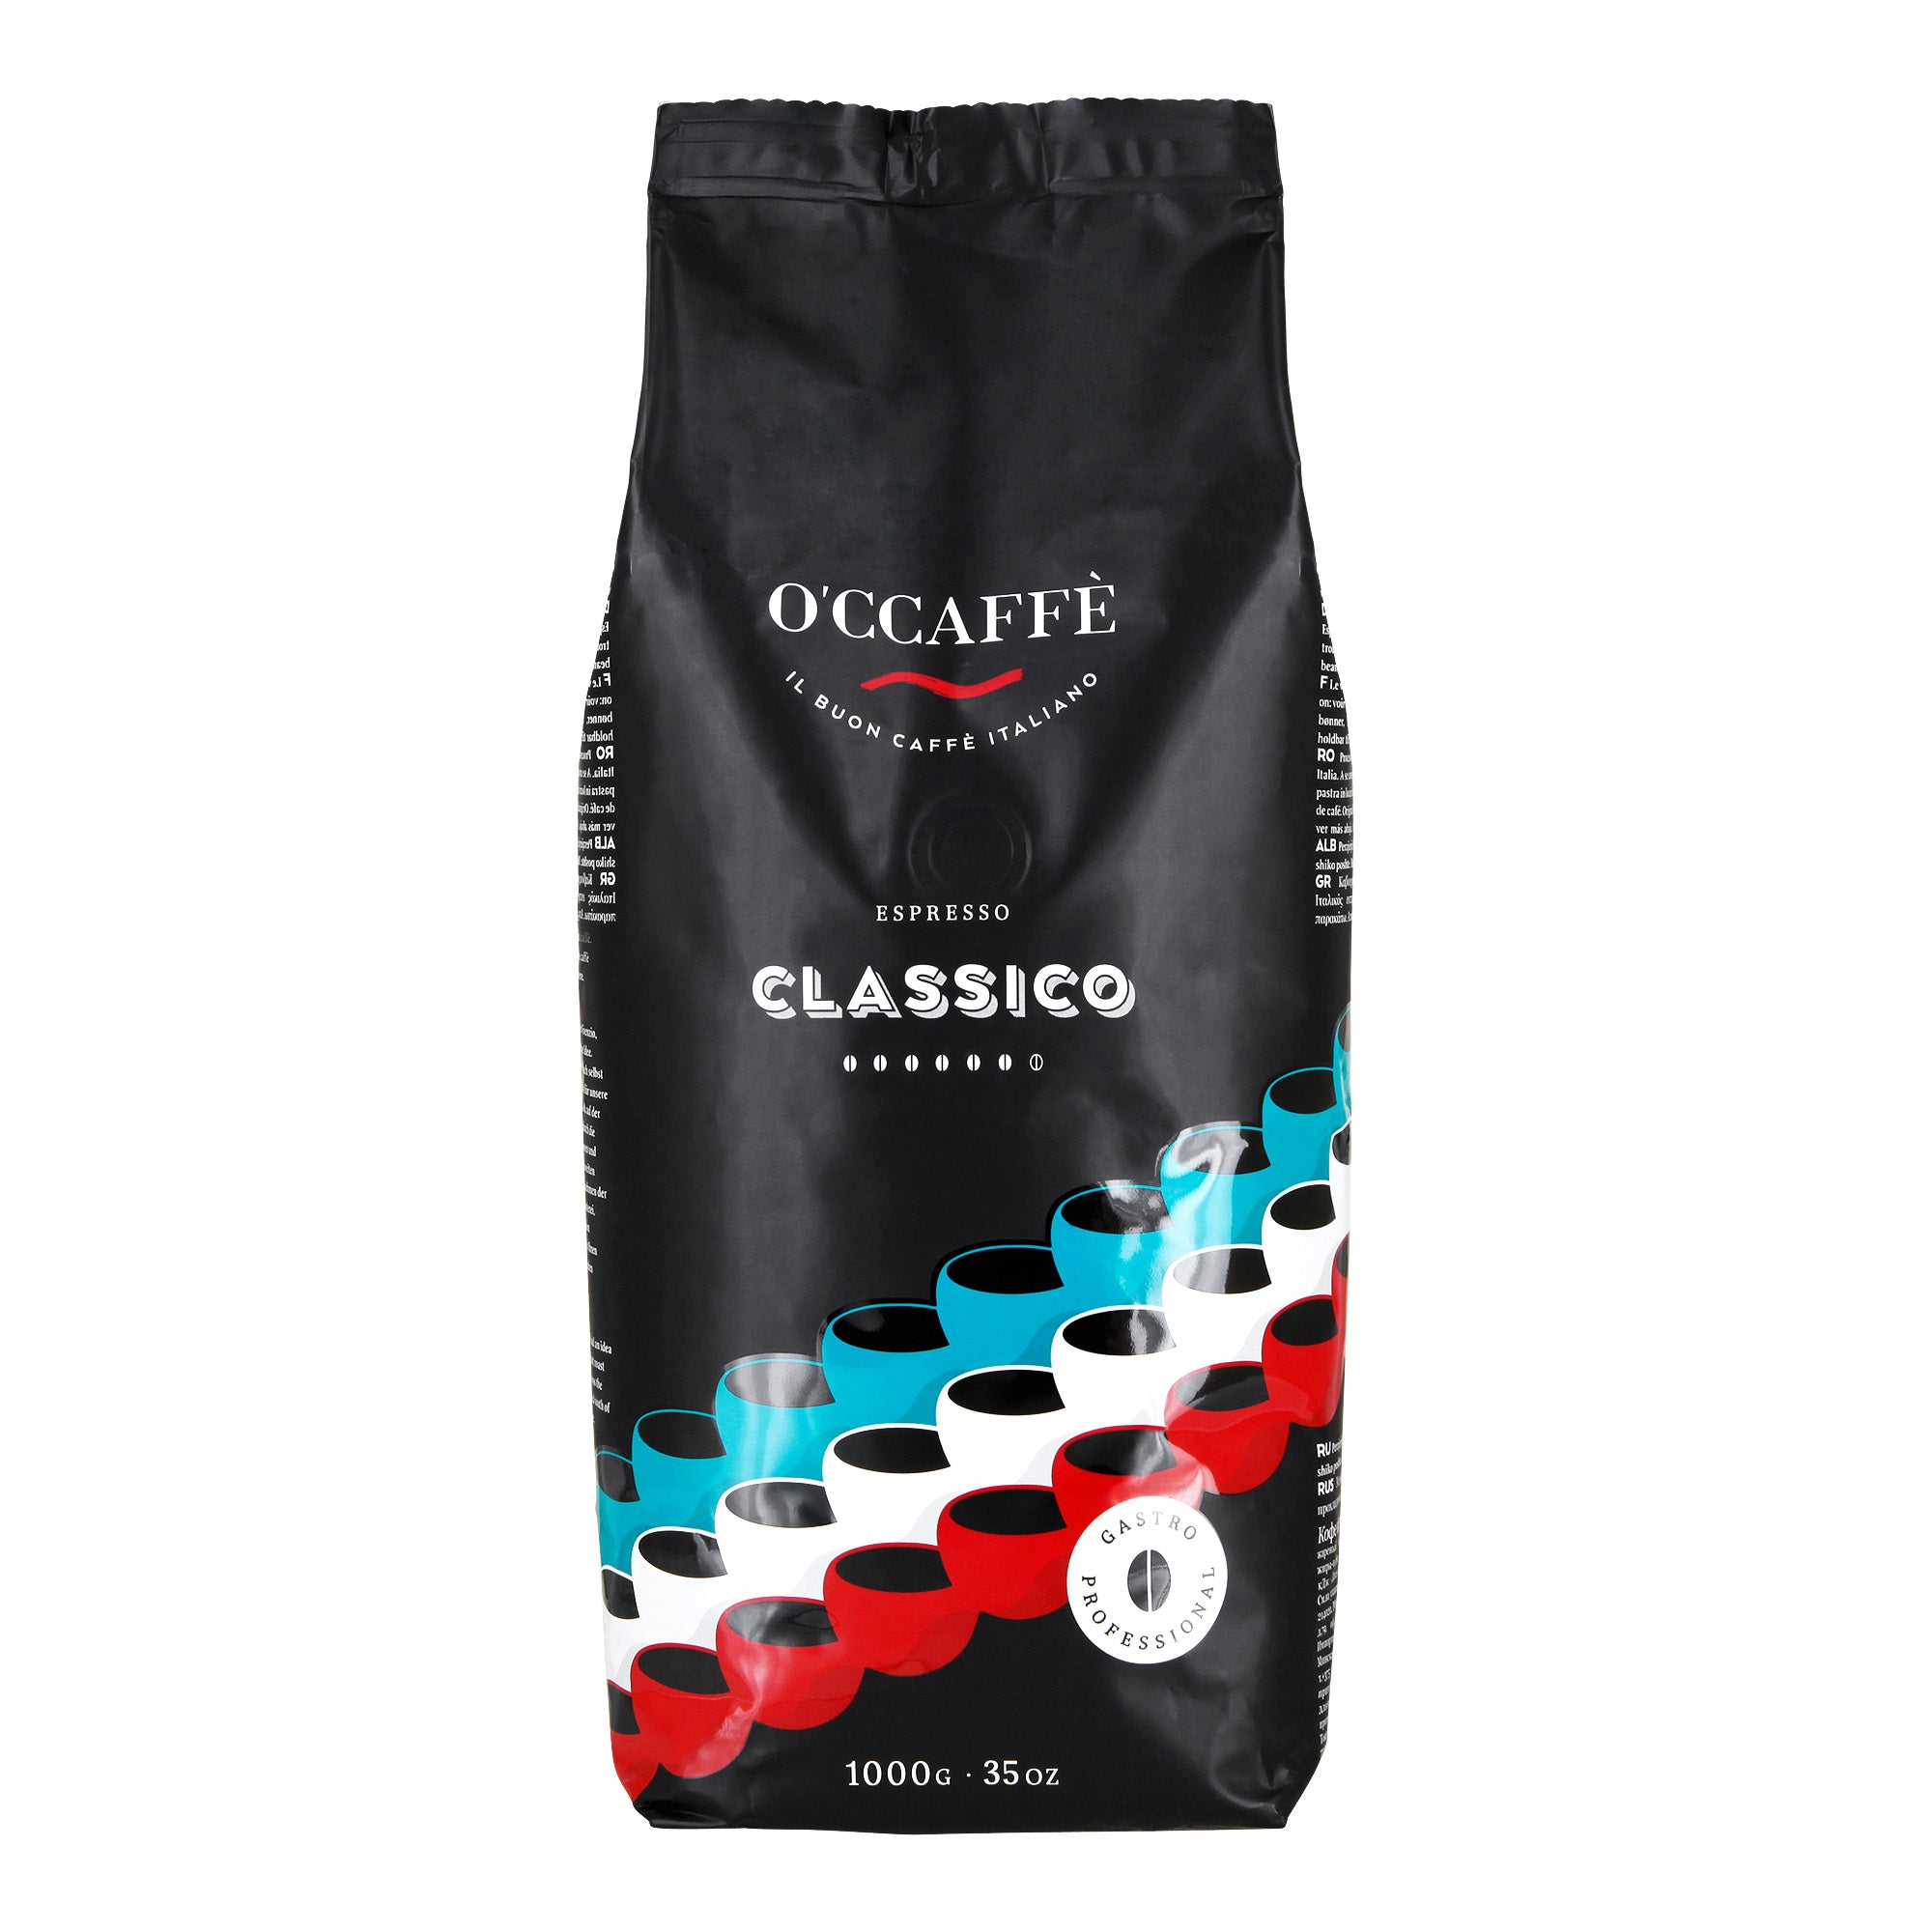 Occaffe Grano Espresso Classico Professional 1kg